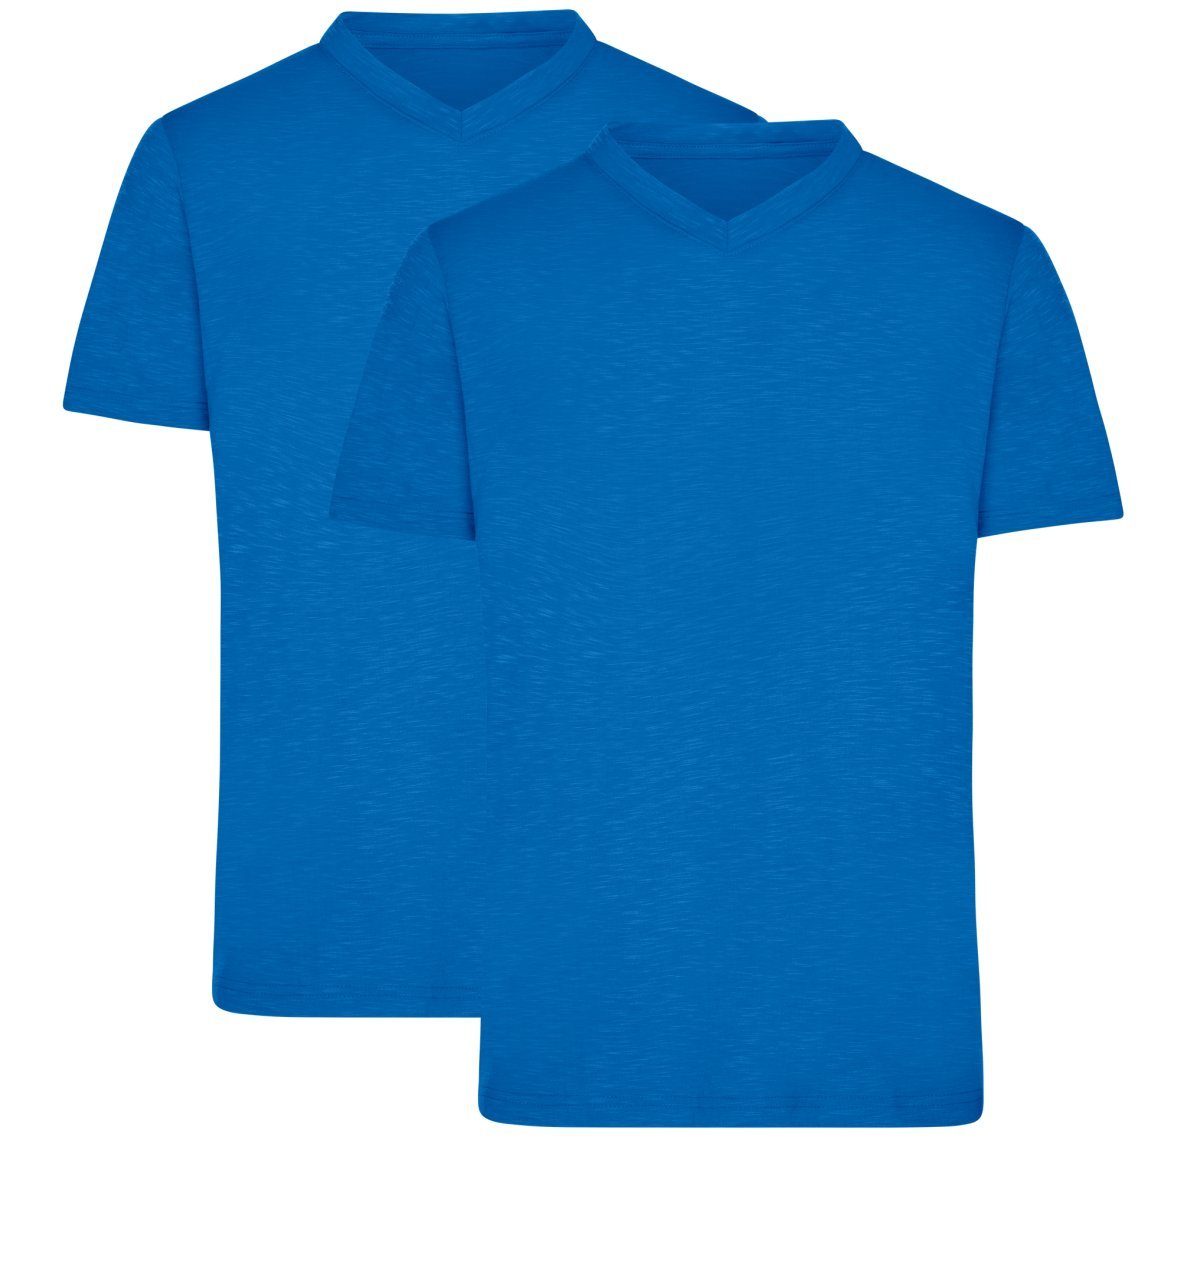 James & Nicholson T-Shirt Doppelpack Herren Funktions T-Shirt für Freizeit und Sport JN750 (Doppelpack, 2 Stück) Atmungsaktiv, feuchtigkeitsregulierend und schnelltrocknend bright-blue